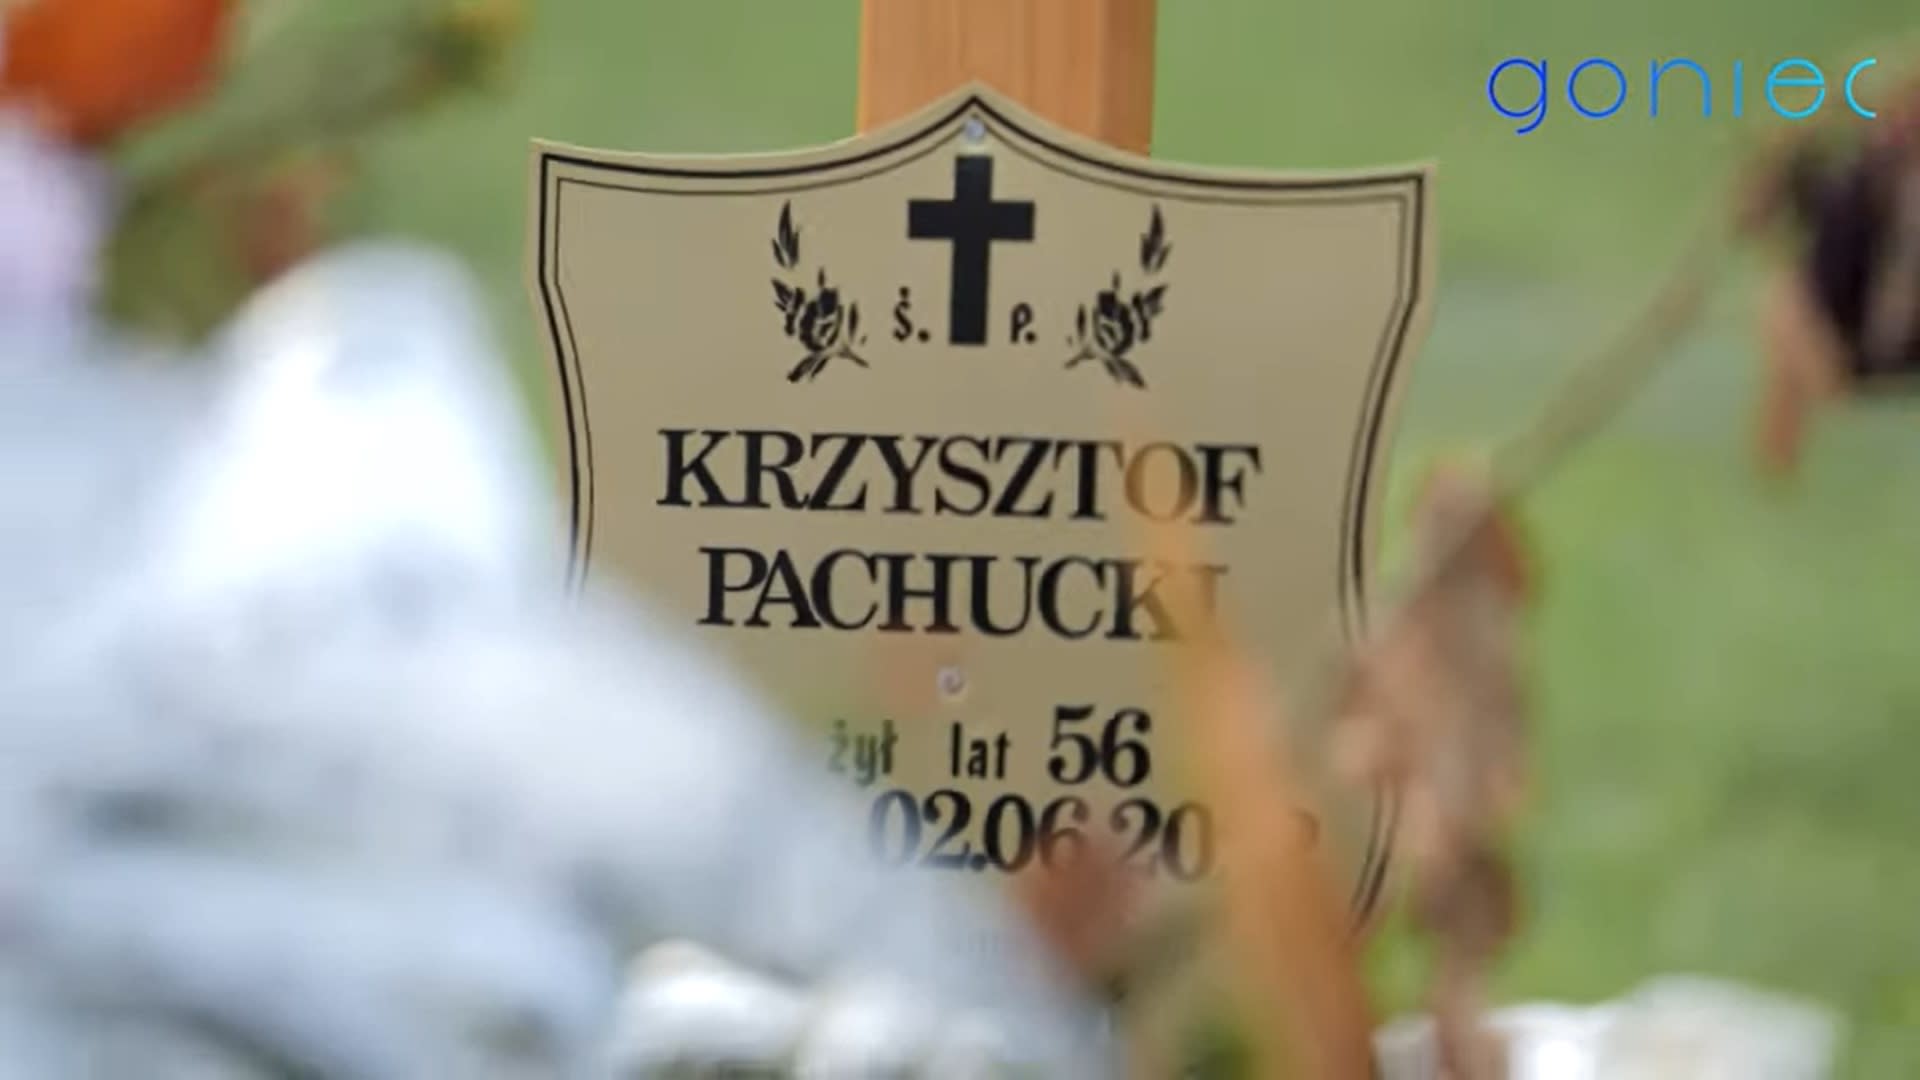 Grób Krzysztofa Pachuckiego z programu "Rolnik szuka żony"